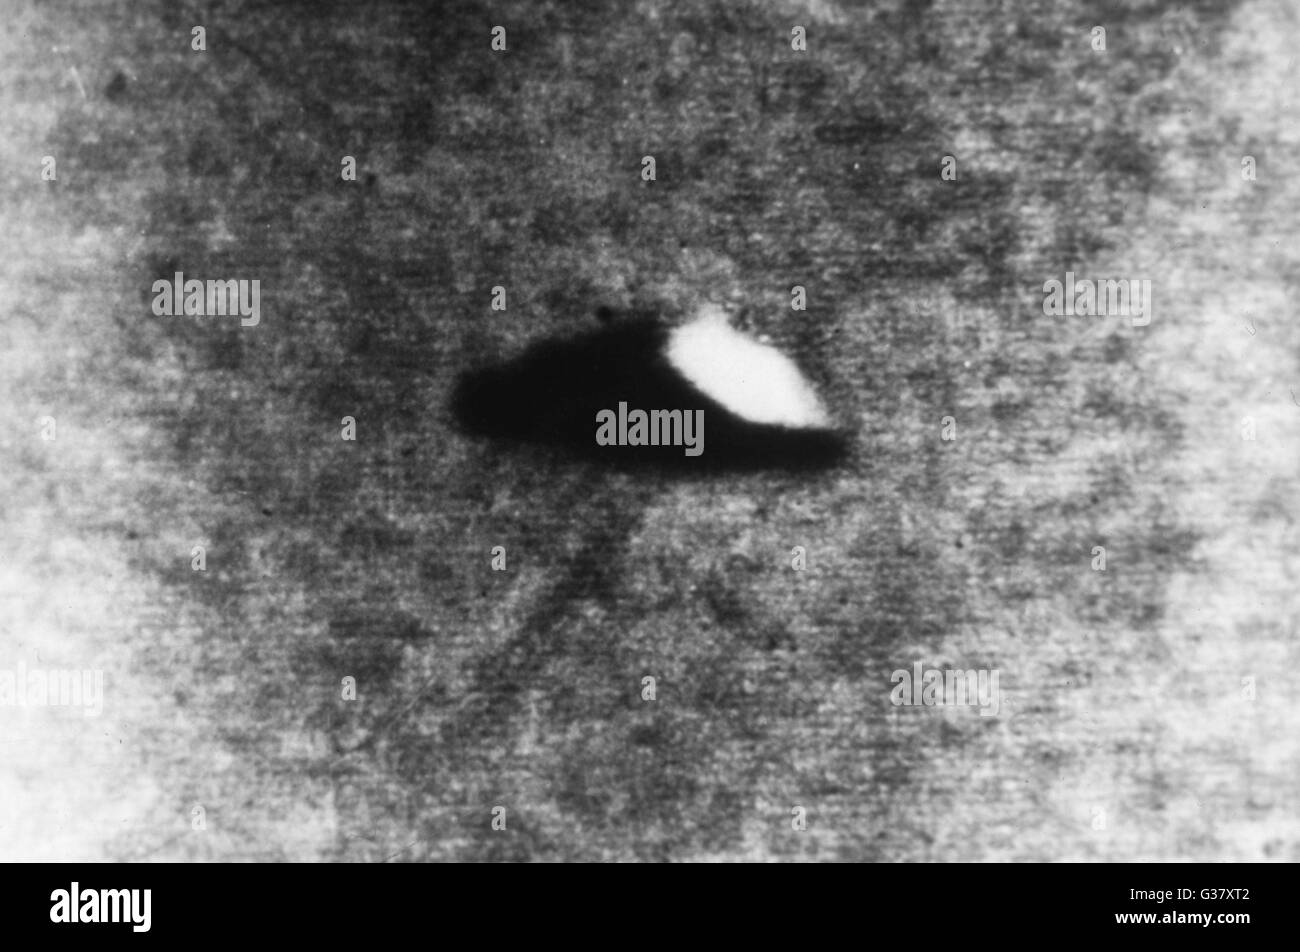 In Namur, Belgien Postbote ereignisreichem sieht eine UFO in den Wolken und kann drei Fotos zu machen, bevor es verschwindet.     Datum: 5. Juni 1955 Stockfoto